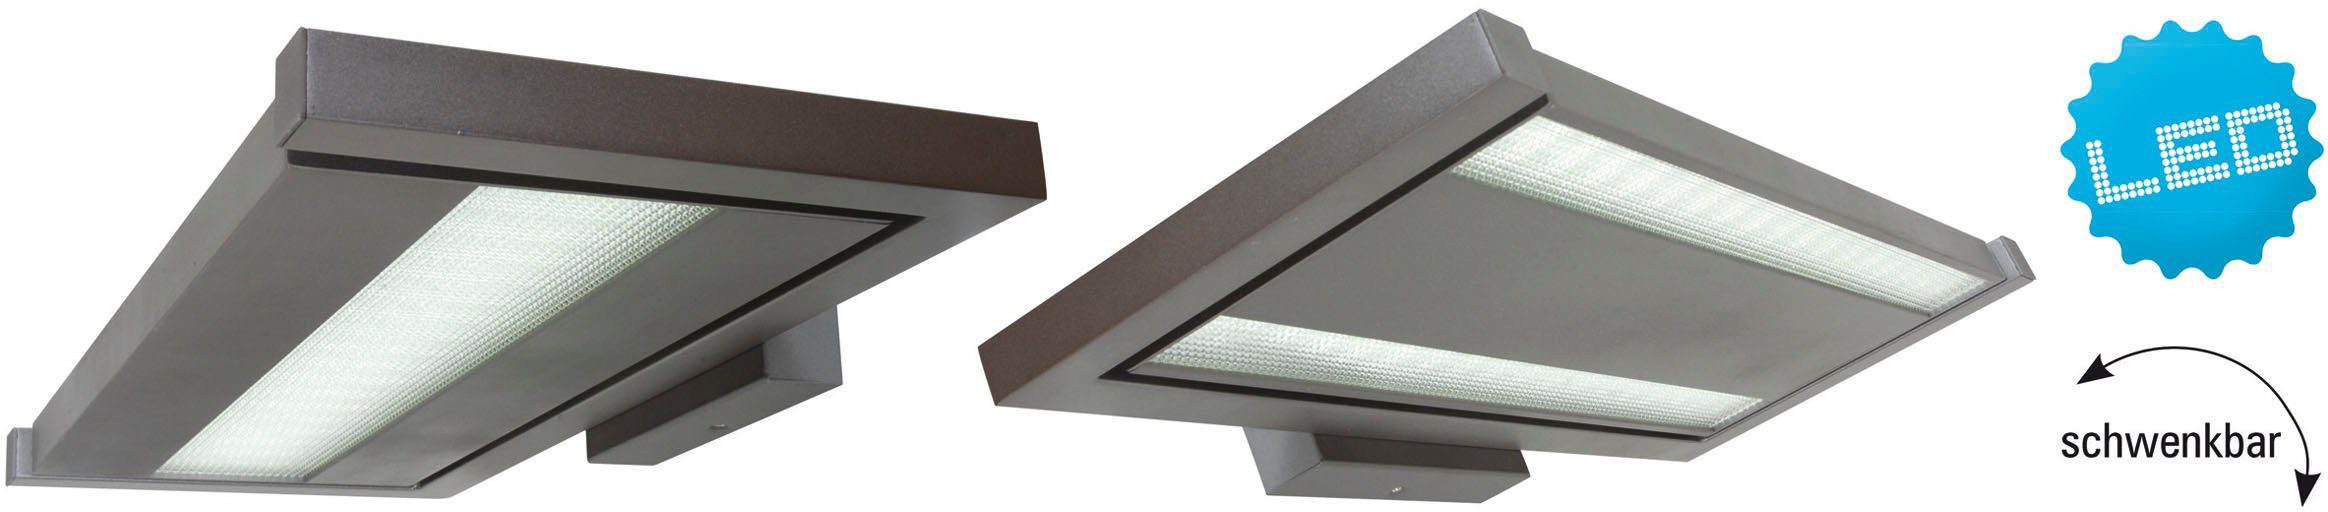 näve LED direkt/indirekt LED schwenkbar grau Licht fest Bennet, integriert, Neutralweiß, Aluguss Wandleuchte Büro/Arbeitszimmer